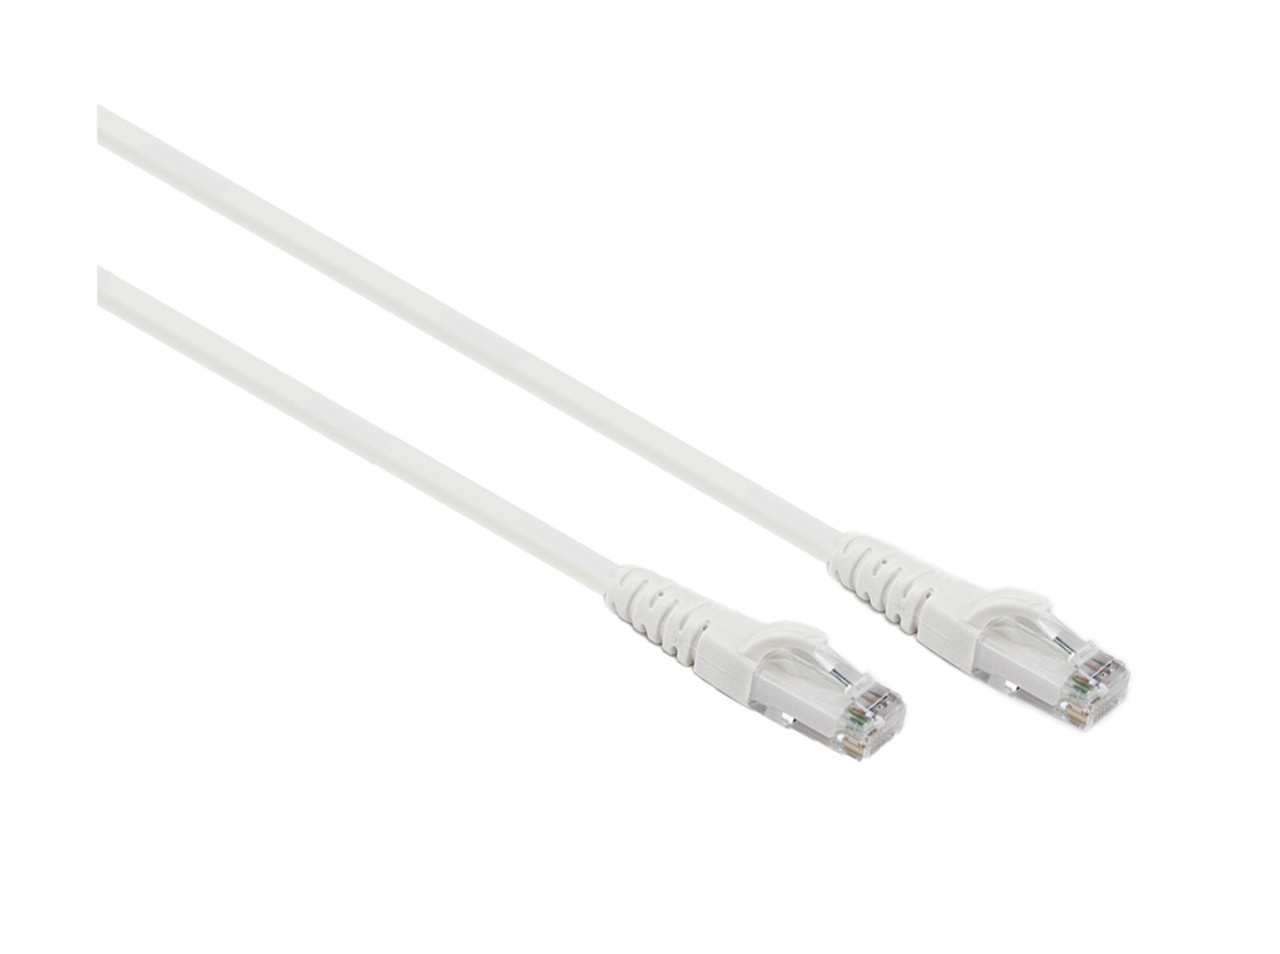 5M White CAT6 UTP Cable